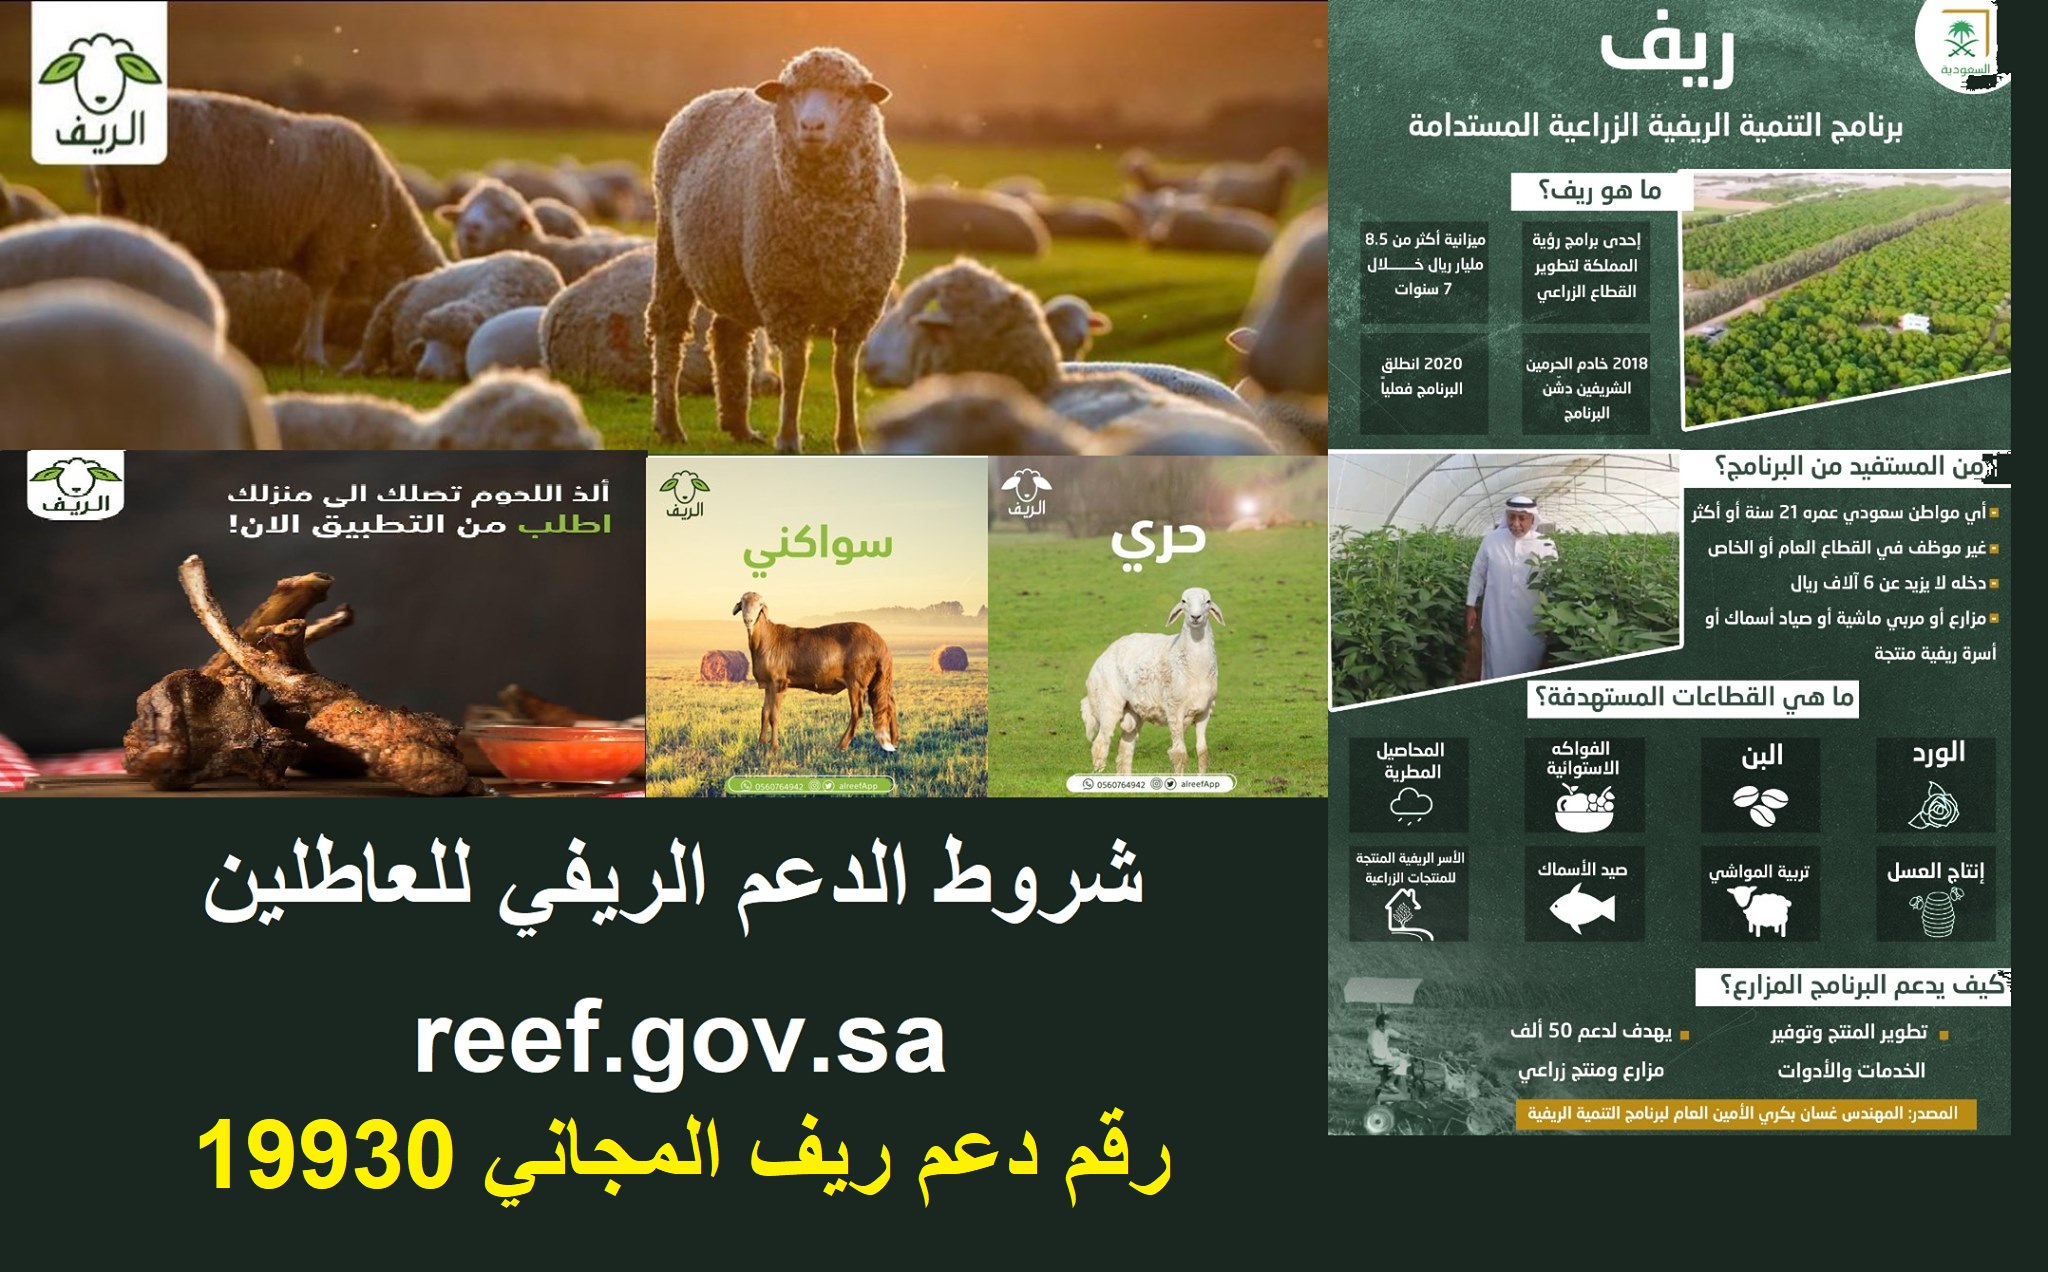 reef.gov.sa رابط وشروط تقديم دعم ريف sdb بوابة أنعام لدعم مربي الماشية mewa.gov.sa